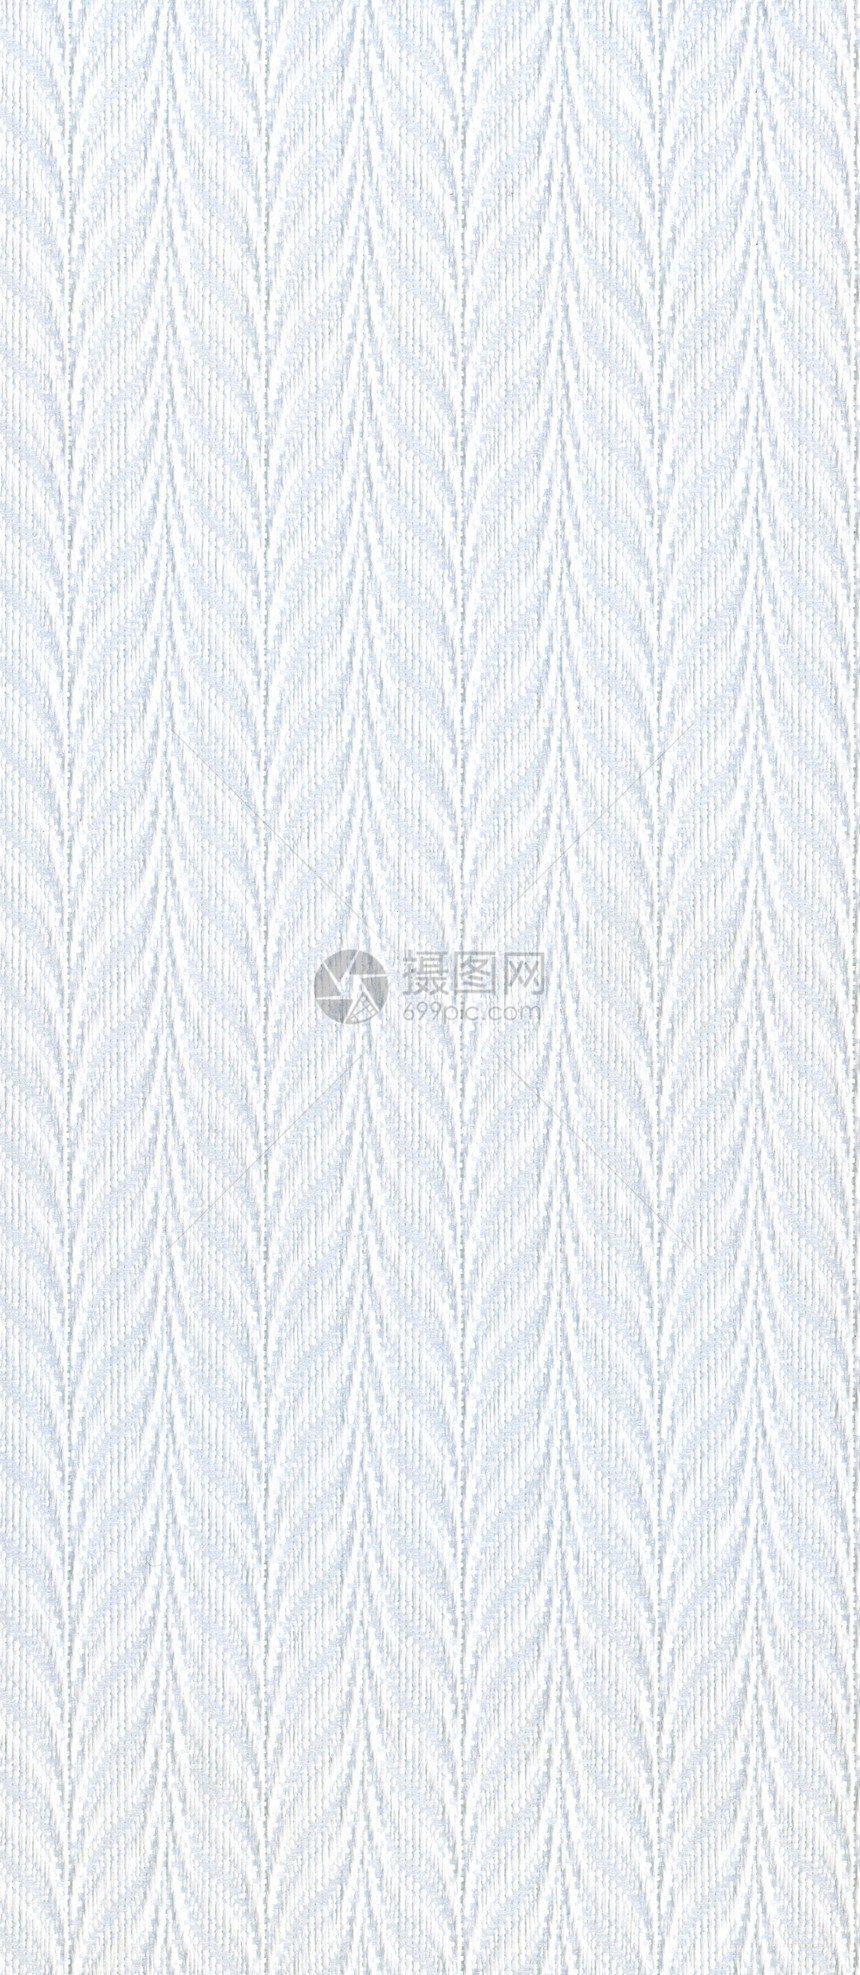 灰色纤维纹理解雇宏观折痕布料棉布生产麻布亚麻纺织品帆布图片